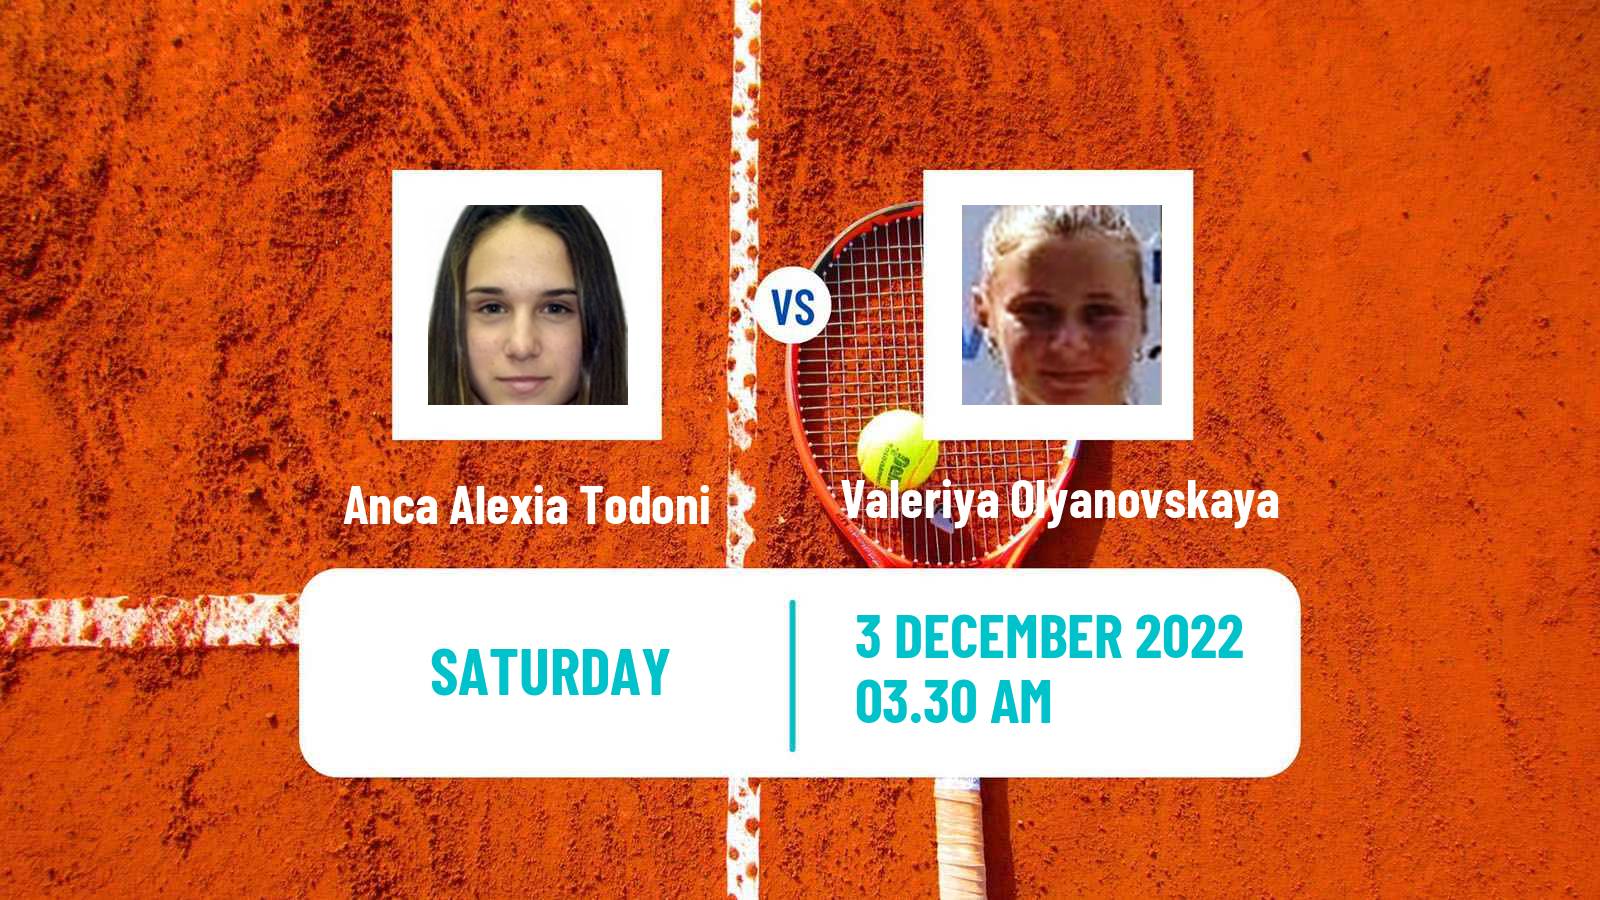 Tennis ITF Tournaments Anca Alexia Todoni - Valeriya Olyanovskaya